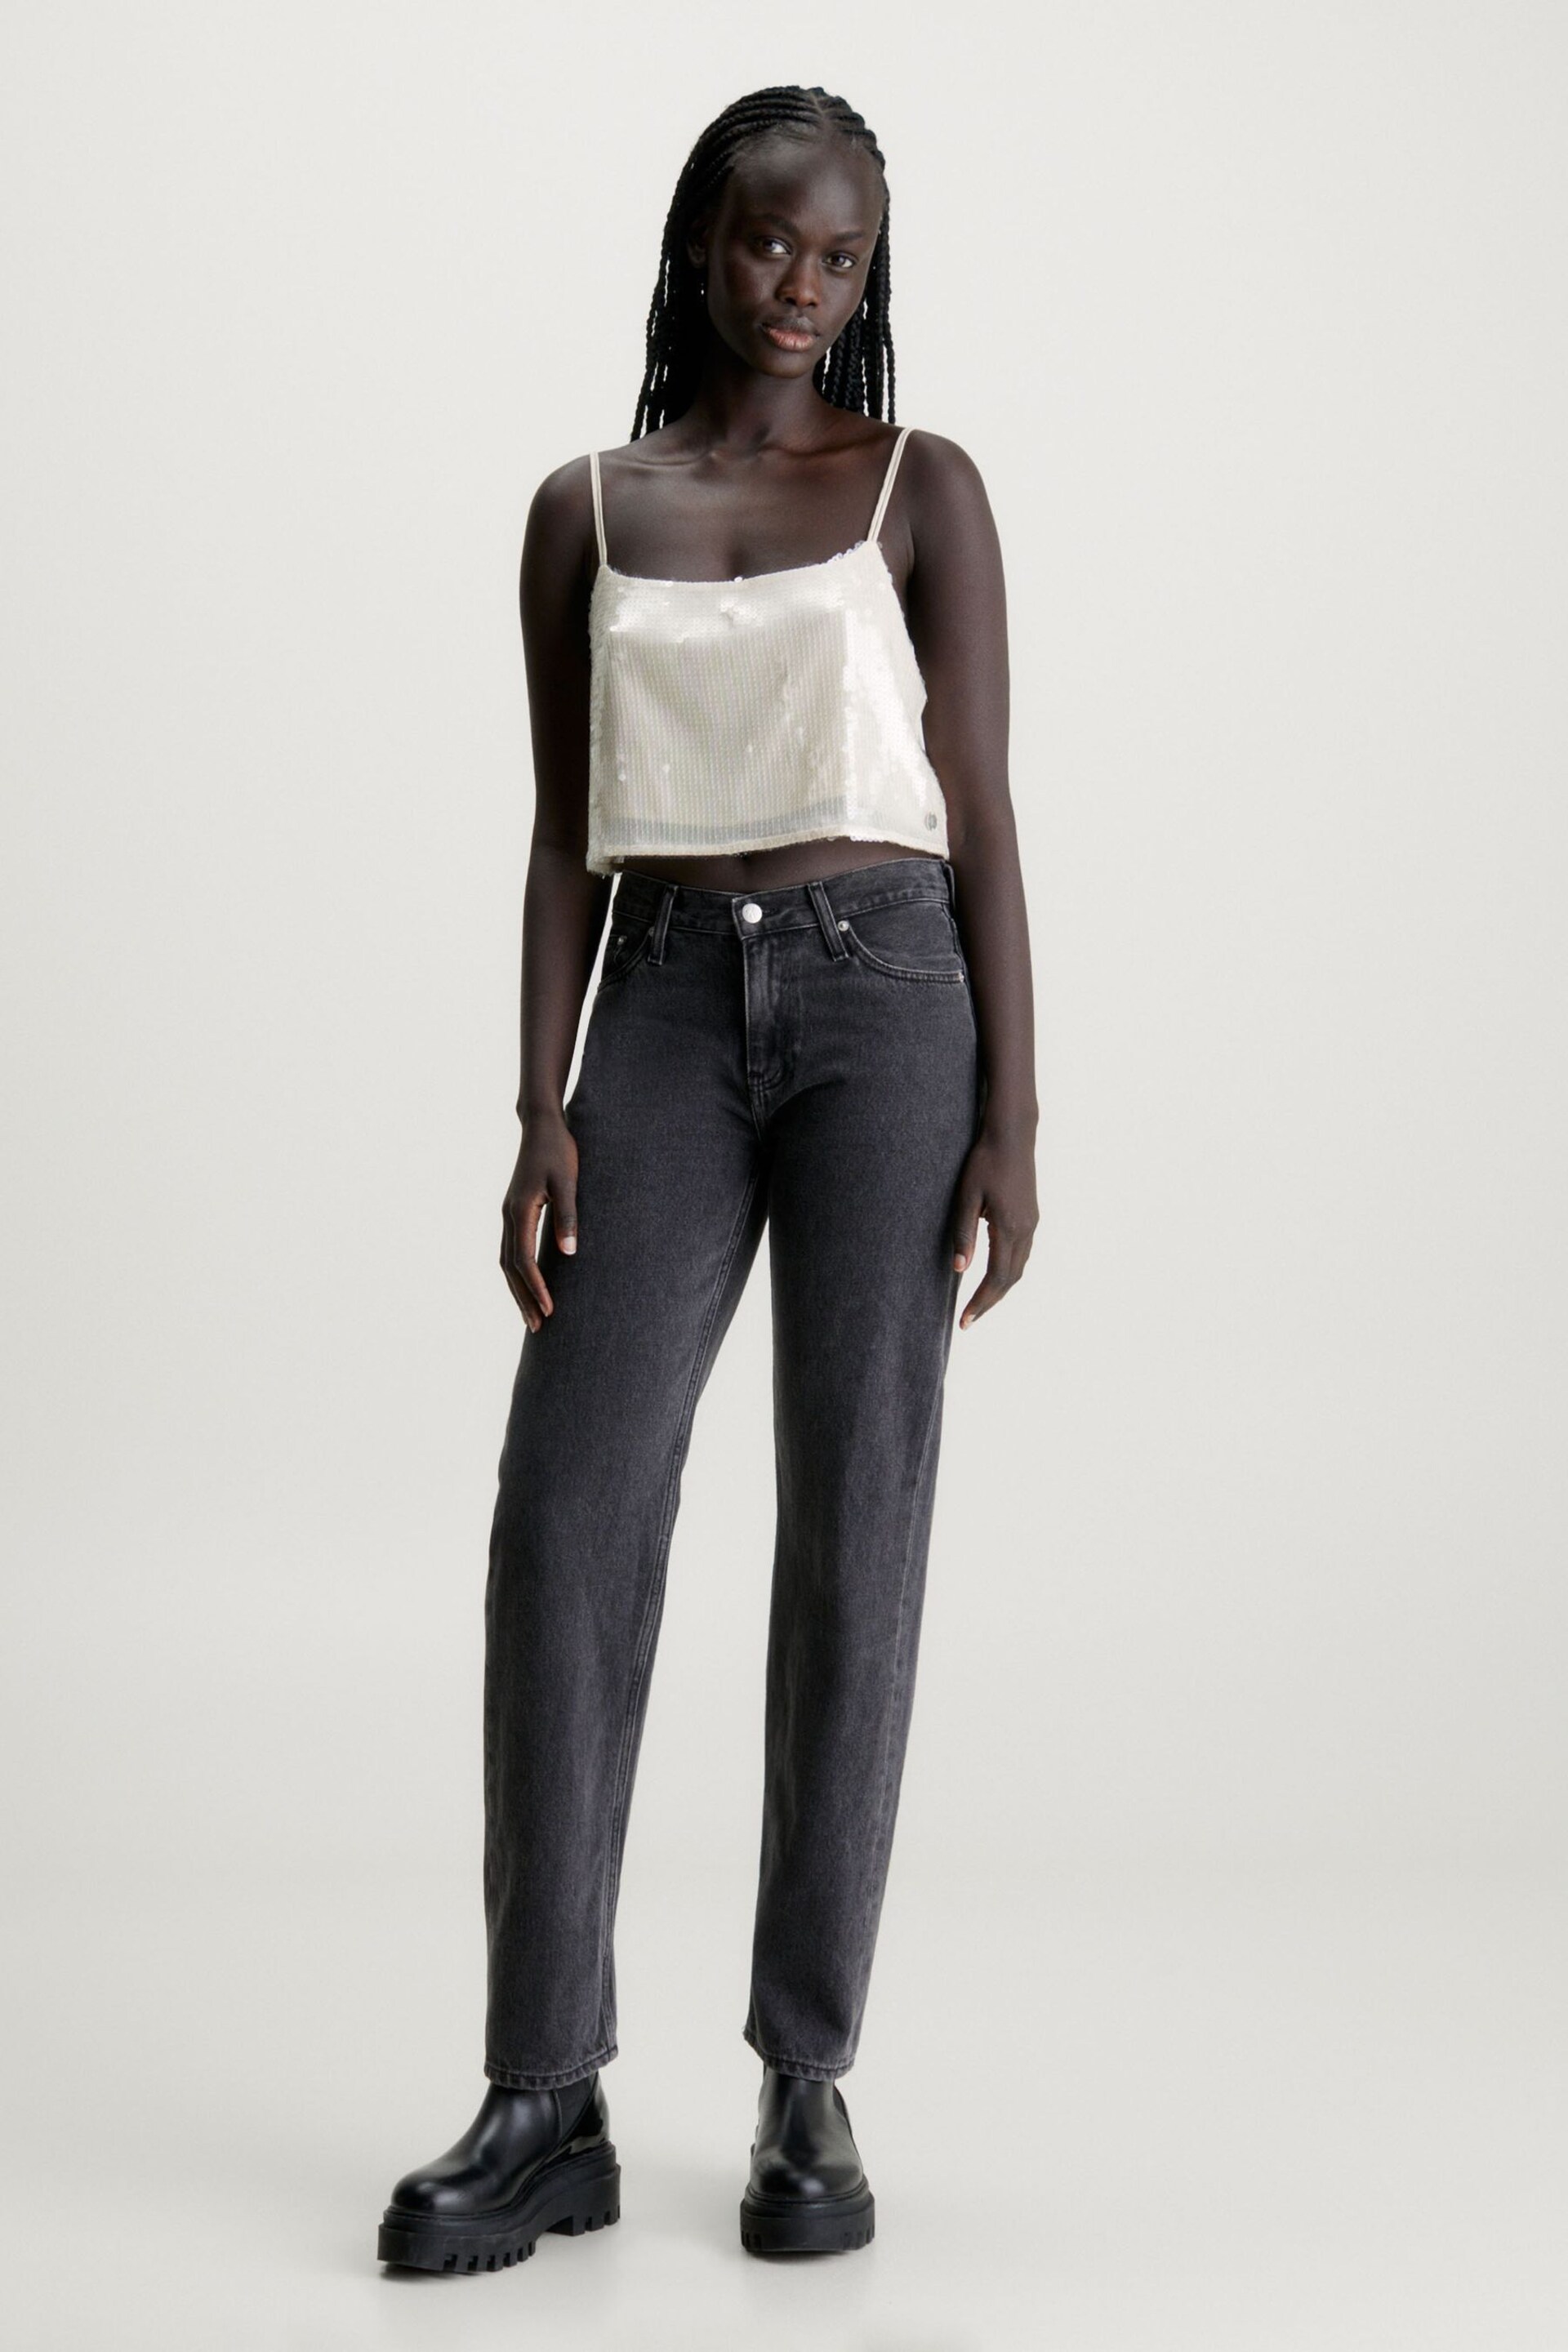 Calvin Klein Silver Sequin Top - Image 3 of 5